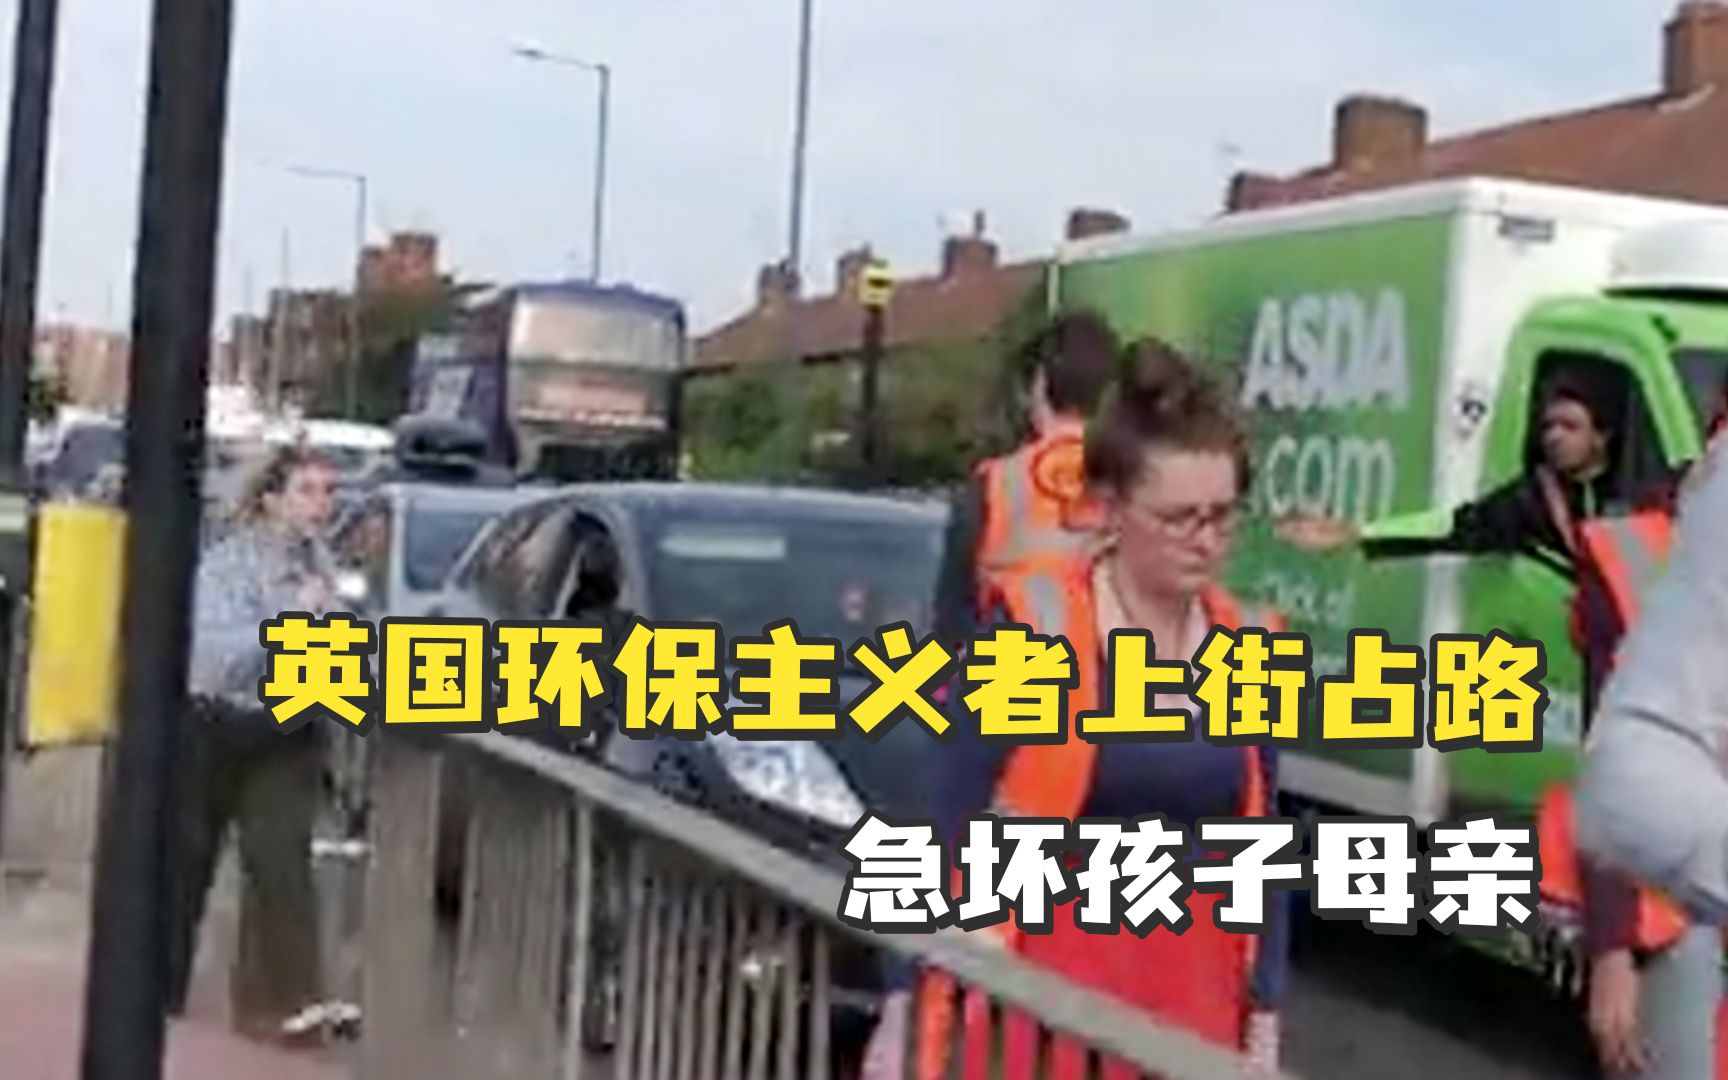 “车上有孩子，我们必须去医院！”英国环保主义者上街占路急坏孩子母亲，反复要求让路竟仍遭无视